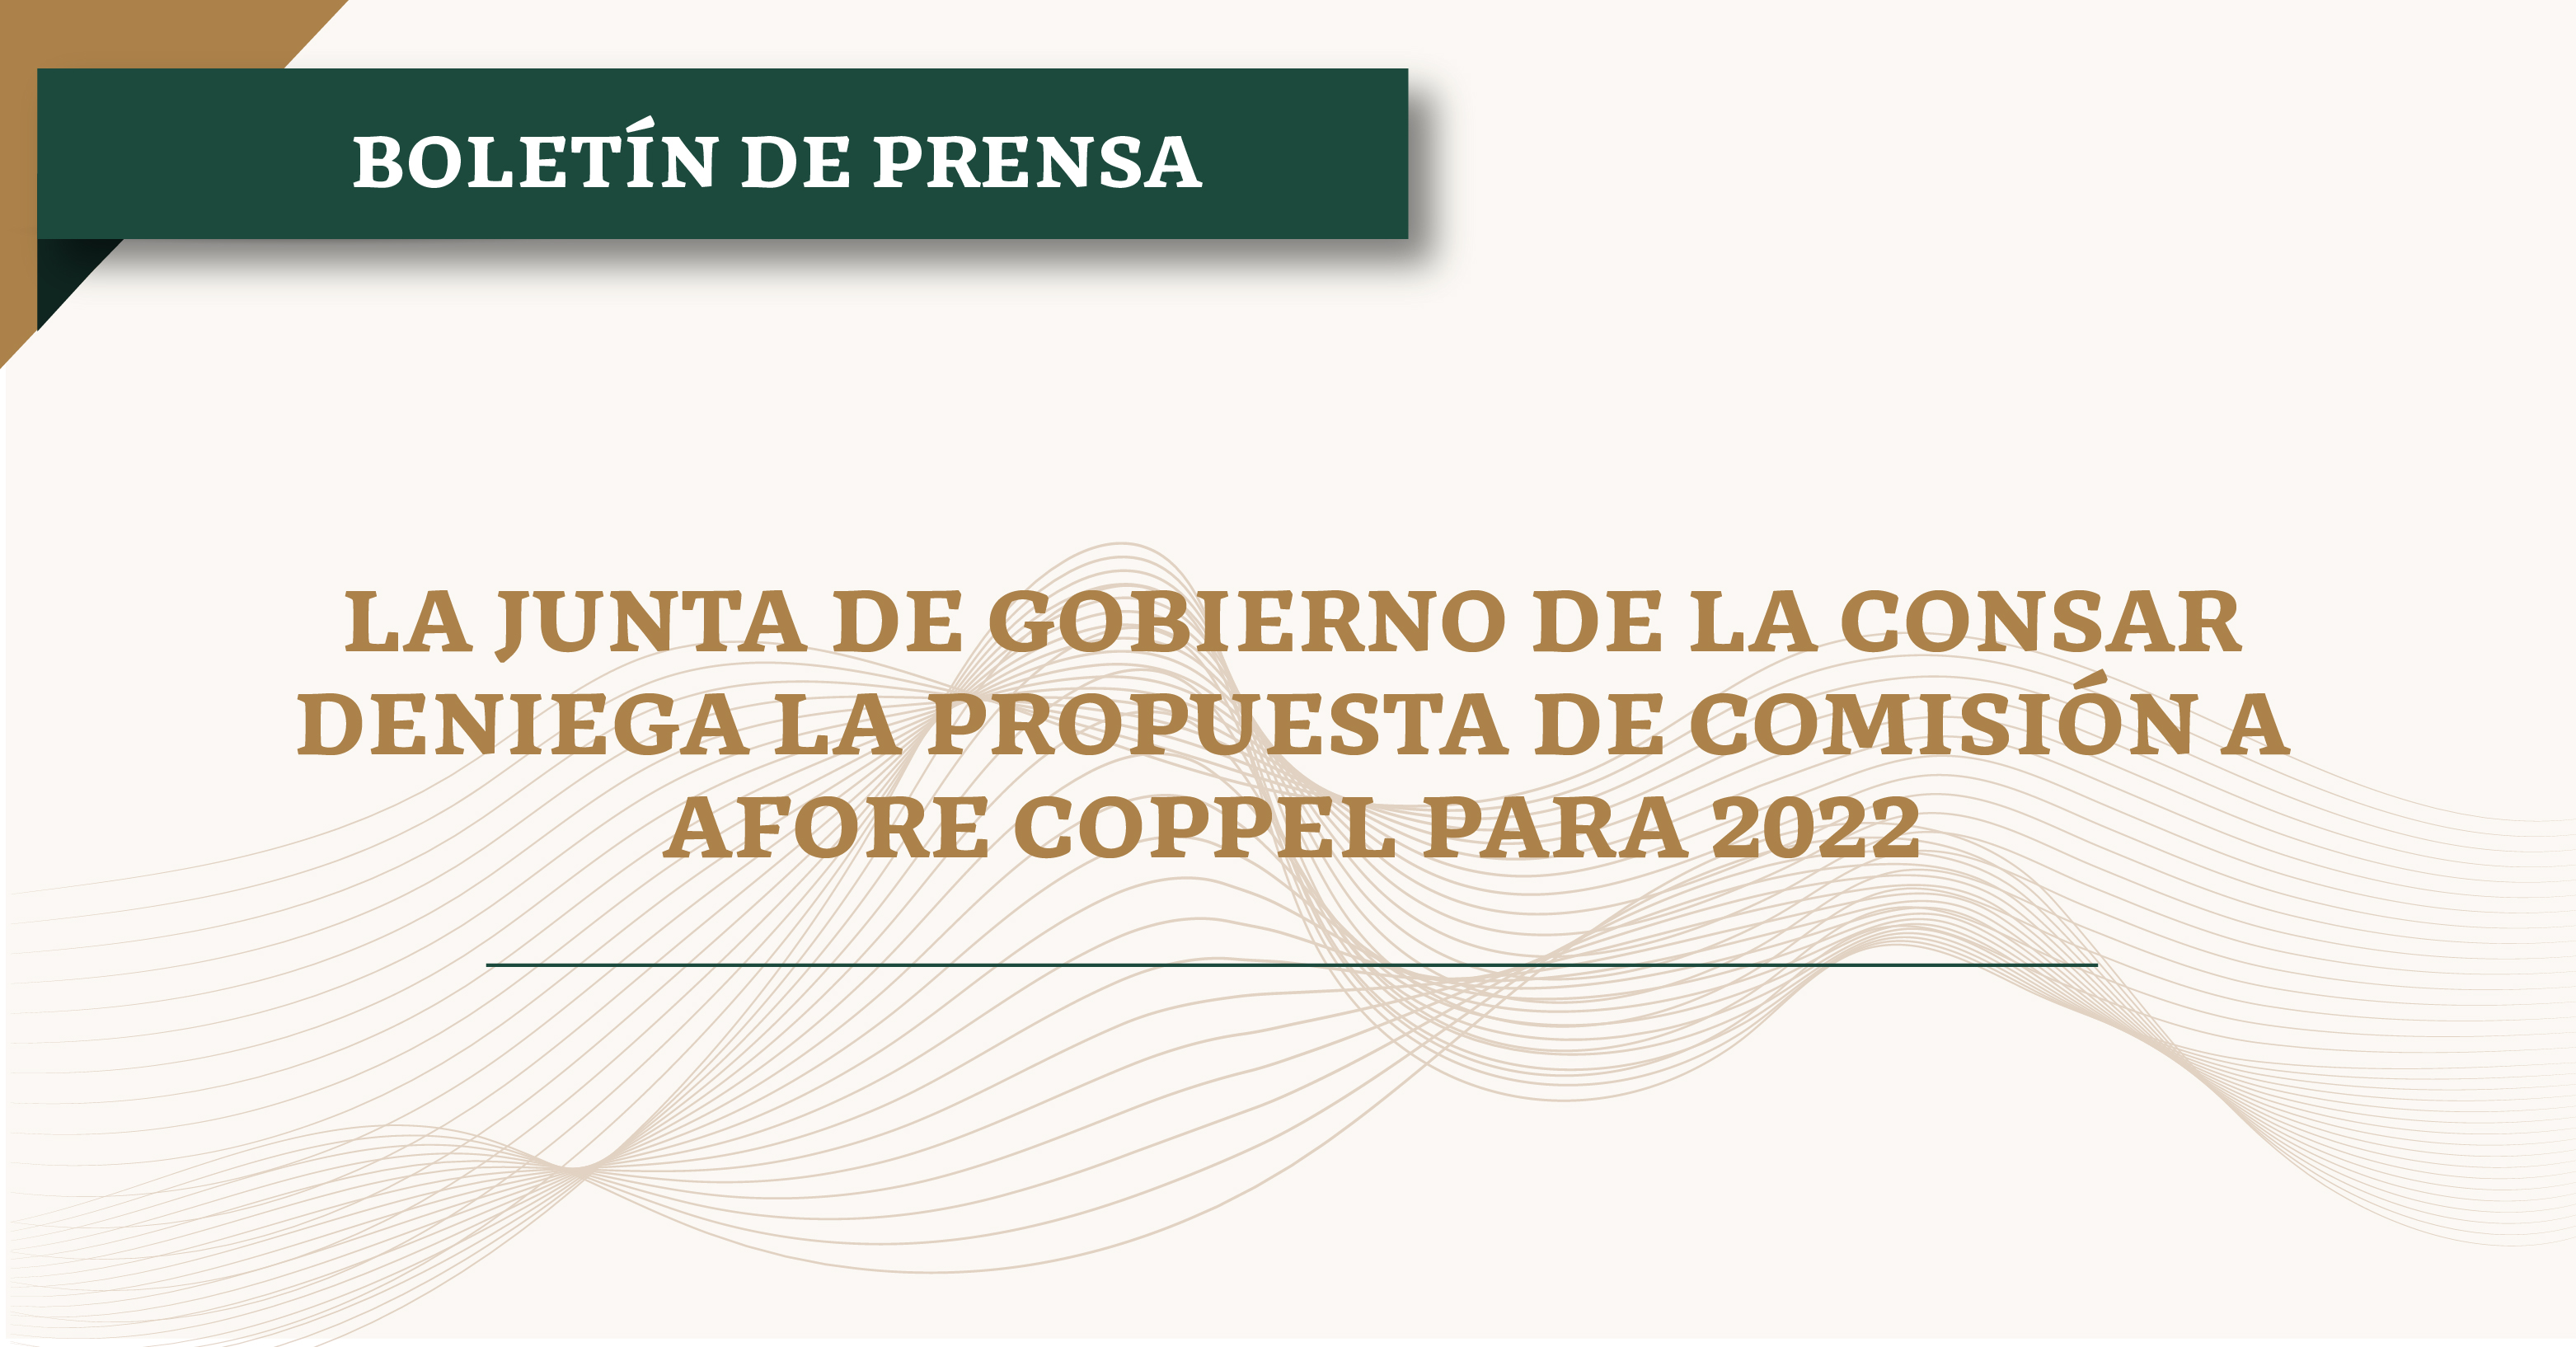 La Junta de Gobierno de la CONSAR deniega la propuesta de comisión a AFORE COPPEL para 2022.